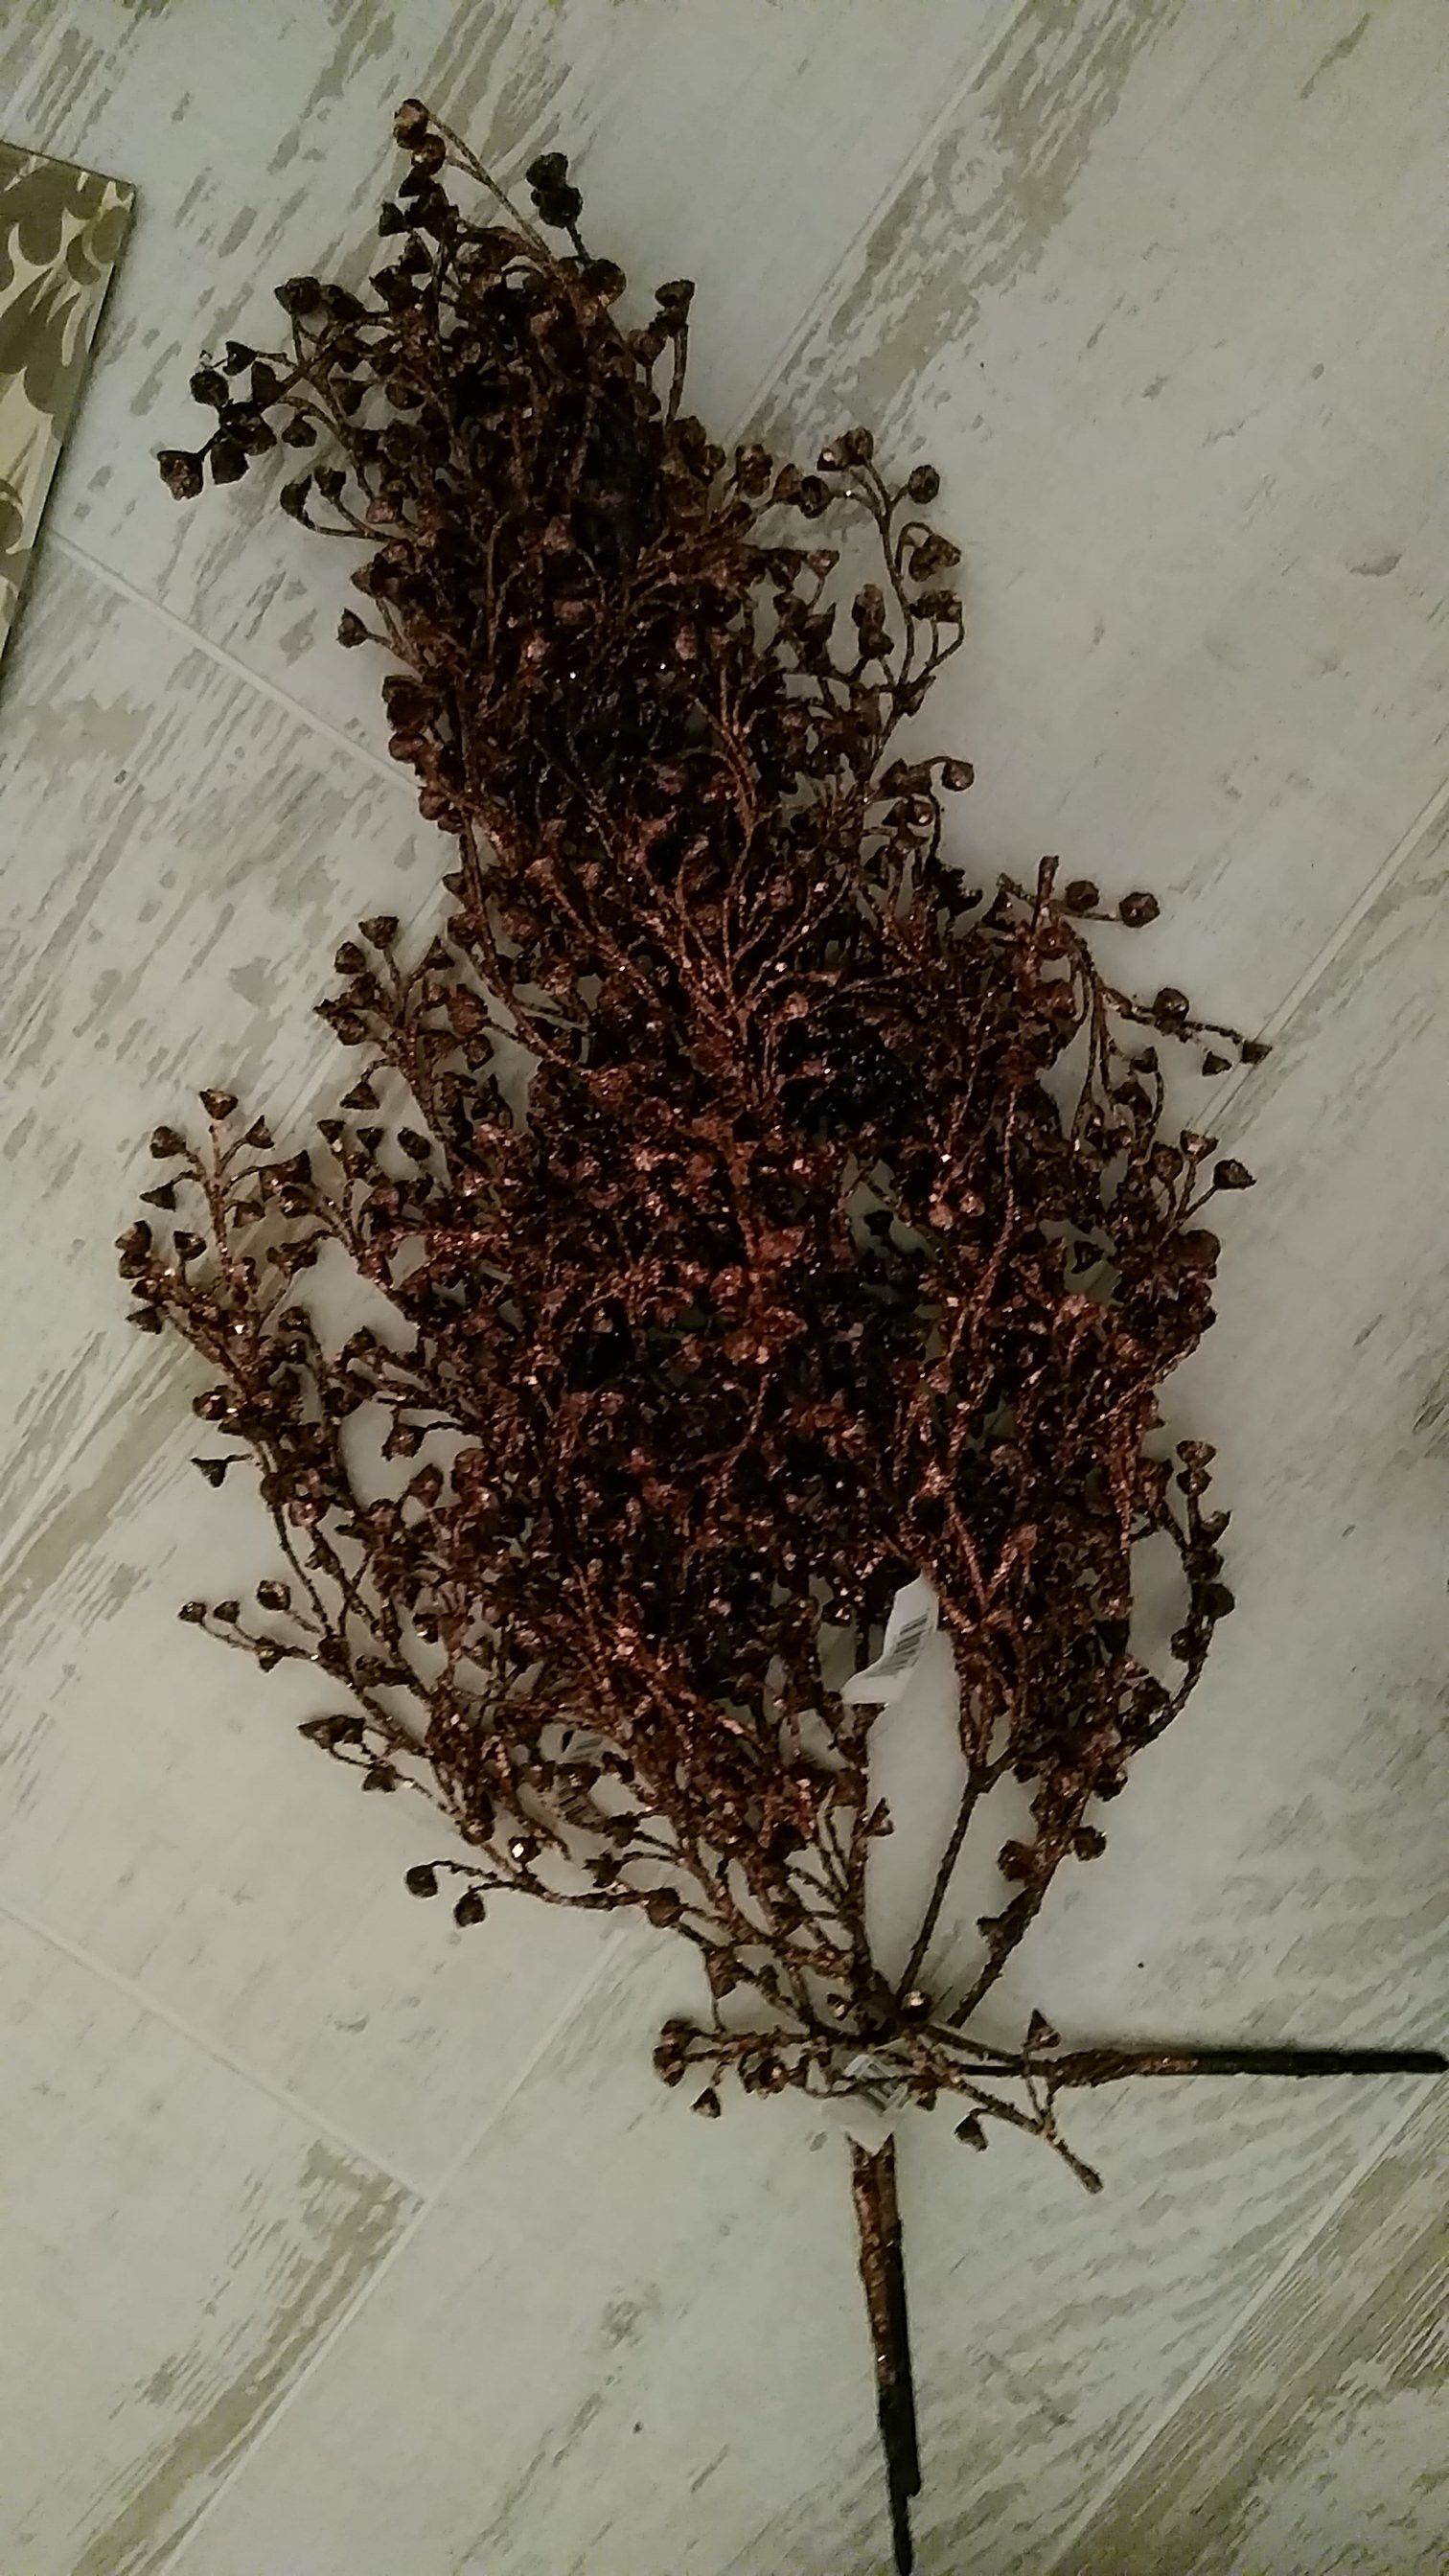 3 stalks brown glittered plantlike filler